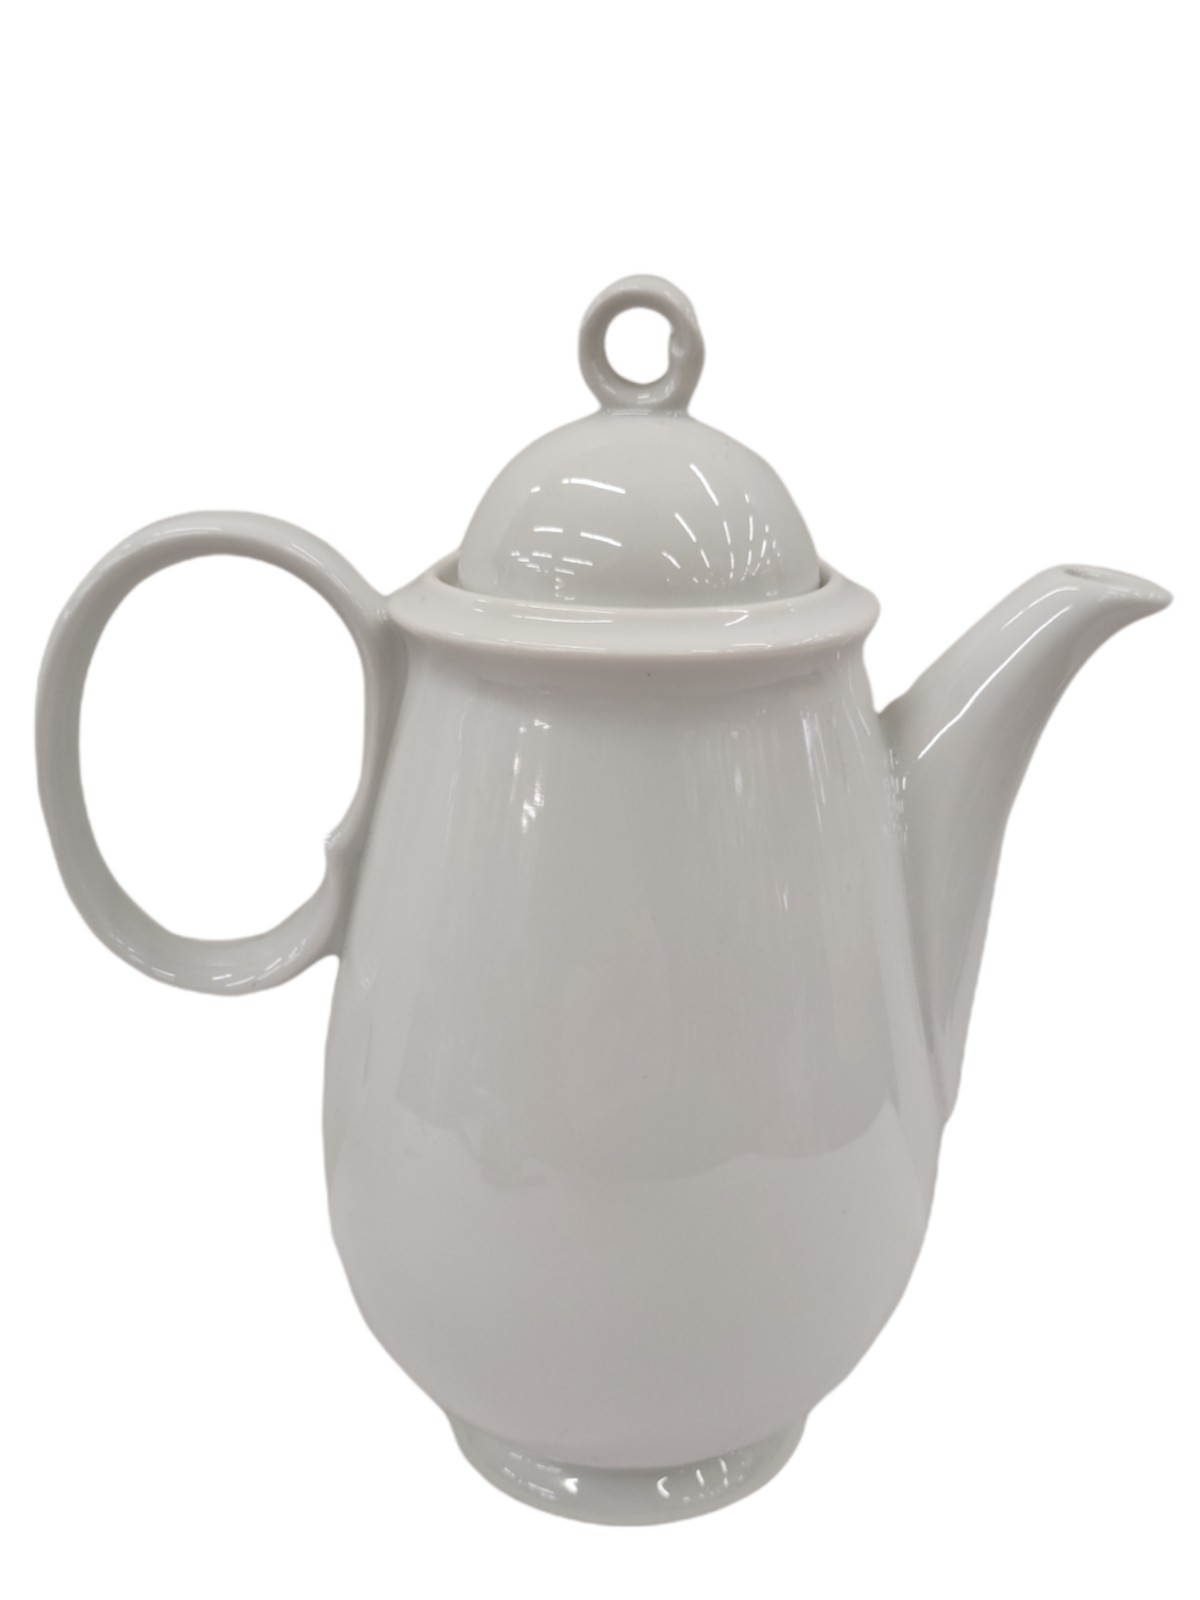 Porcelain teapot/coffee pot